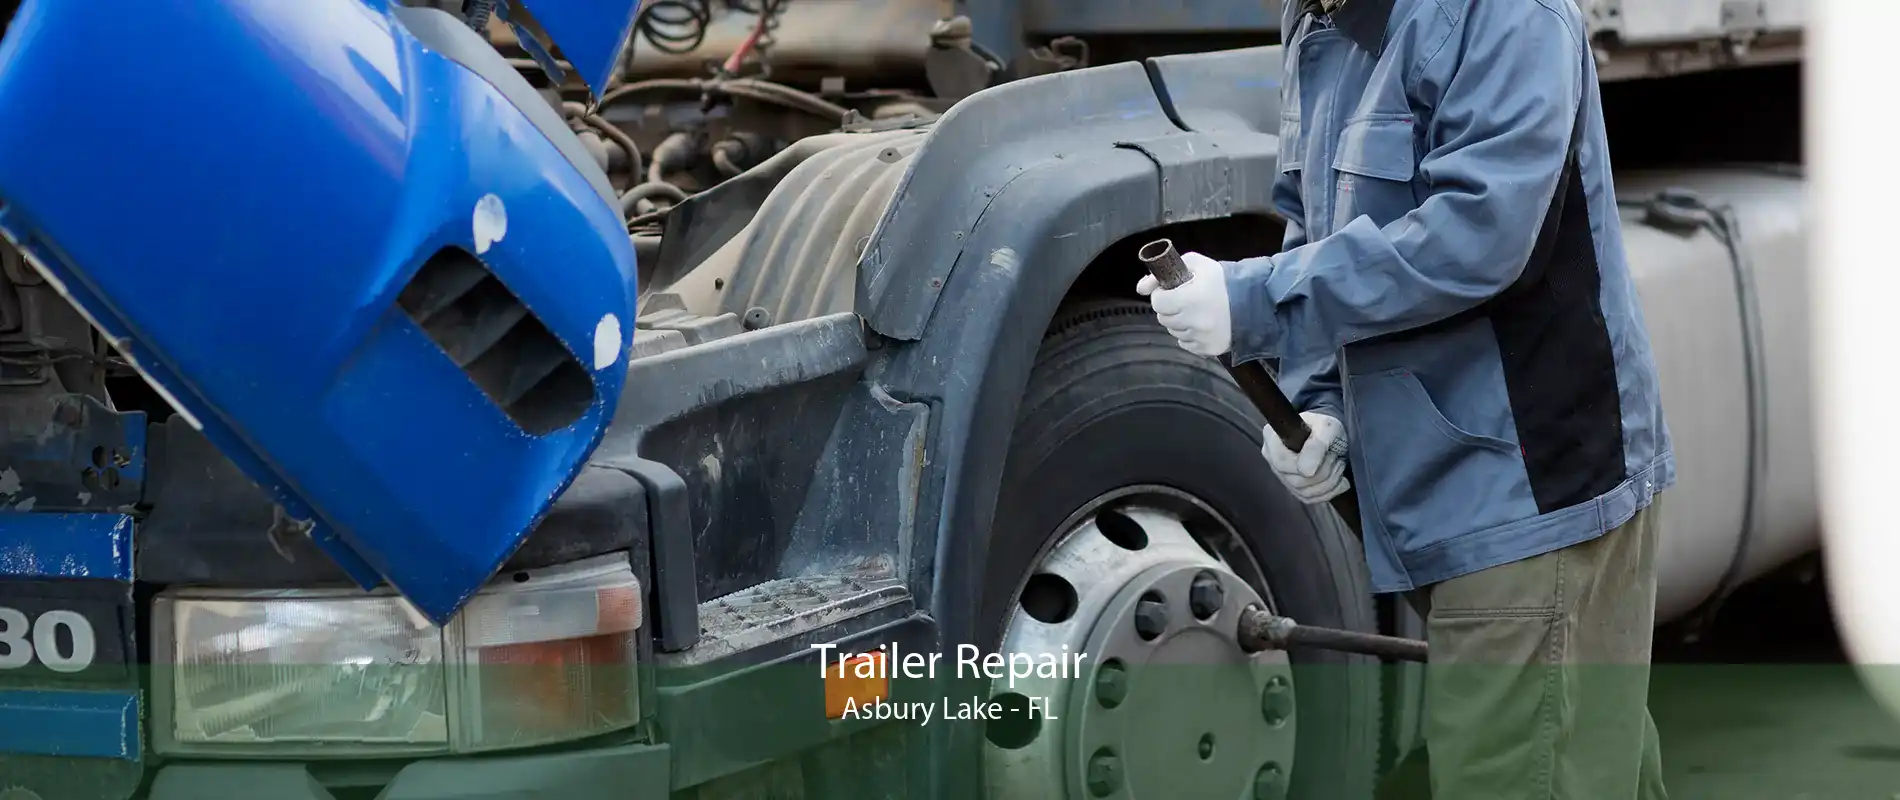 Trailer Repair Asbury Lake - FL